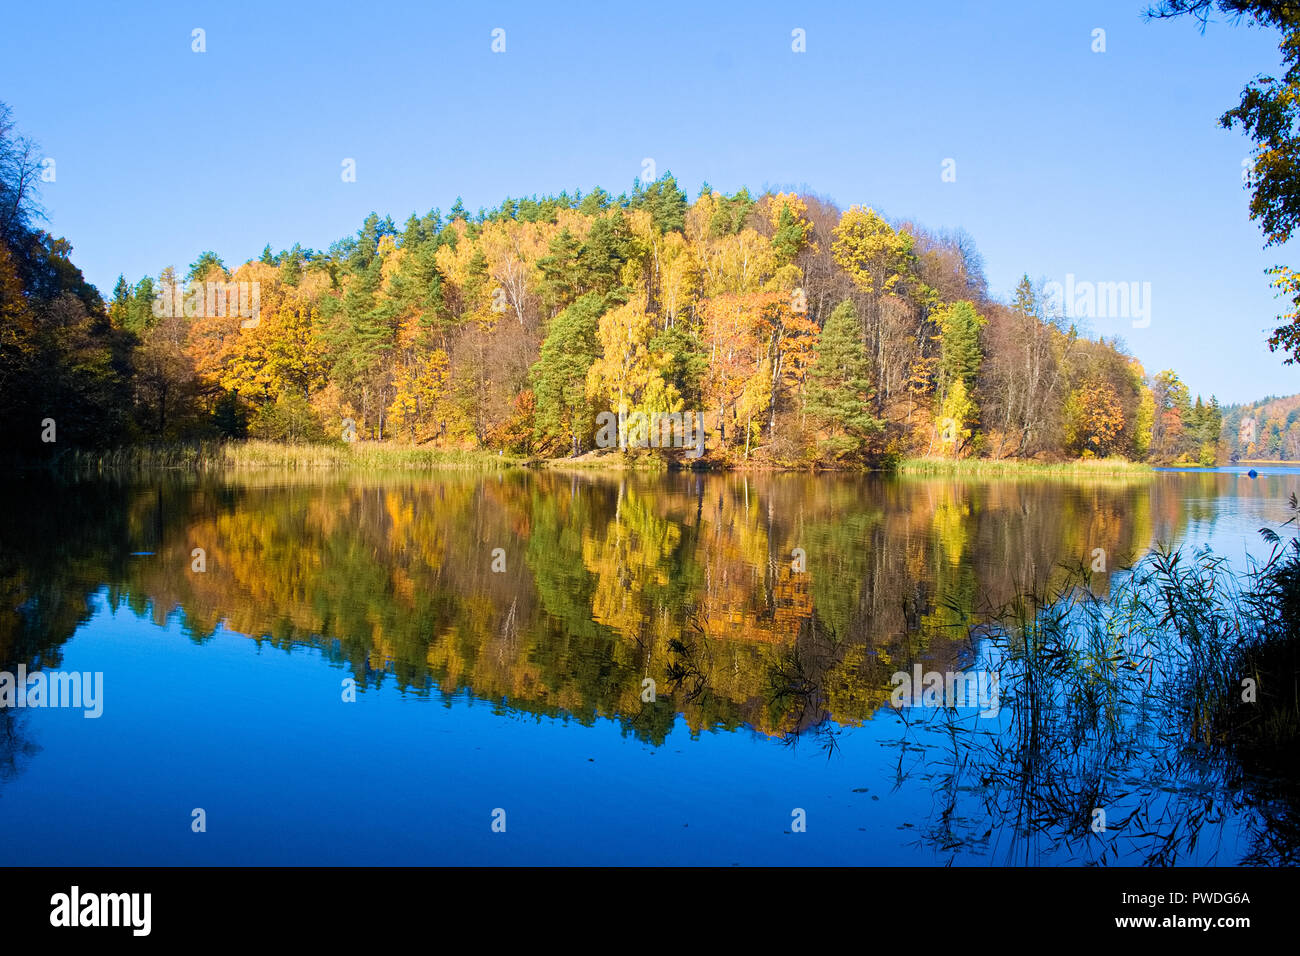 Schöne bunte Bäume Wald im Herbst in einem blauen See wie in einem Spiegel Stockfoto